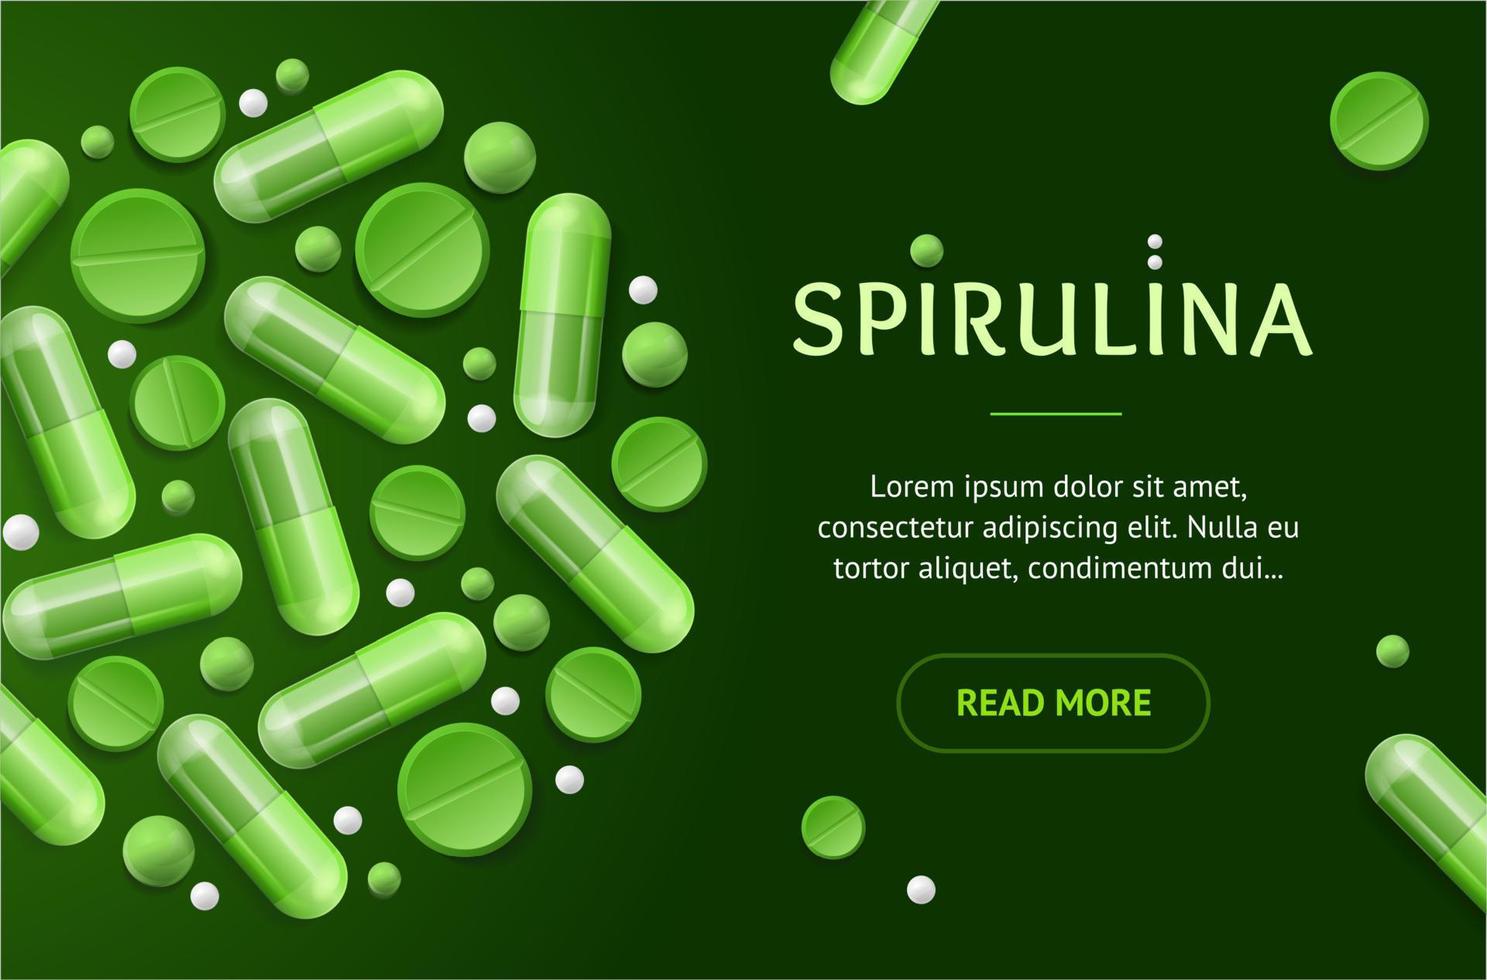 grünes spirulina-pillen-konzeptbanner horizontal mit realistischen detaillierten 3d-elementen. Vektor